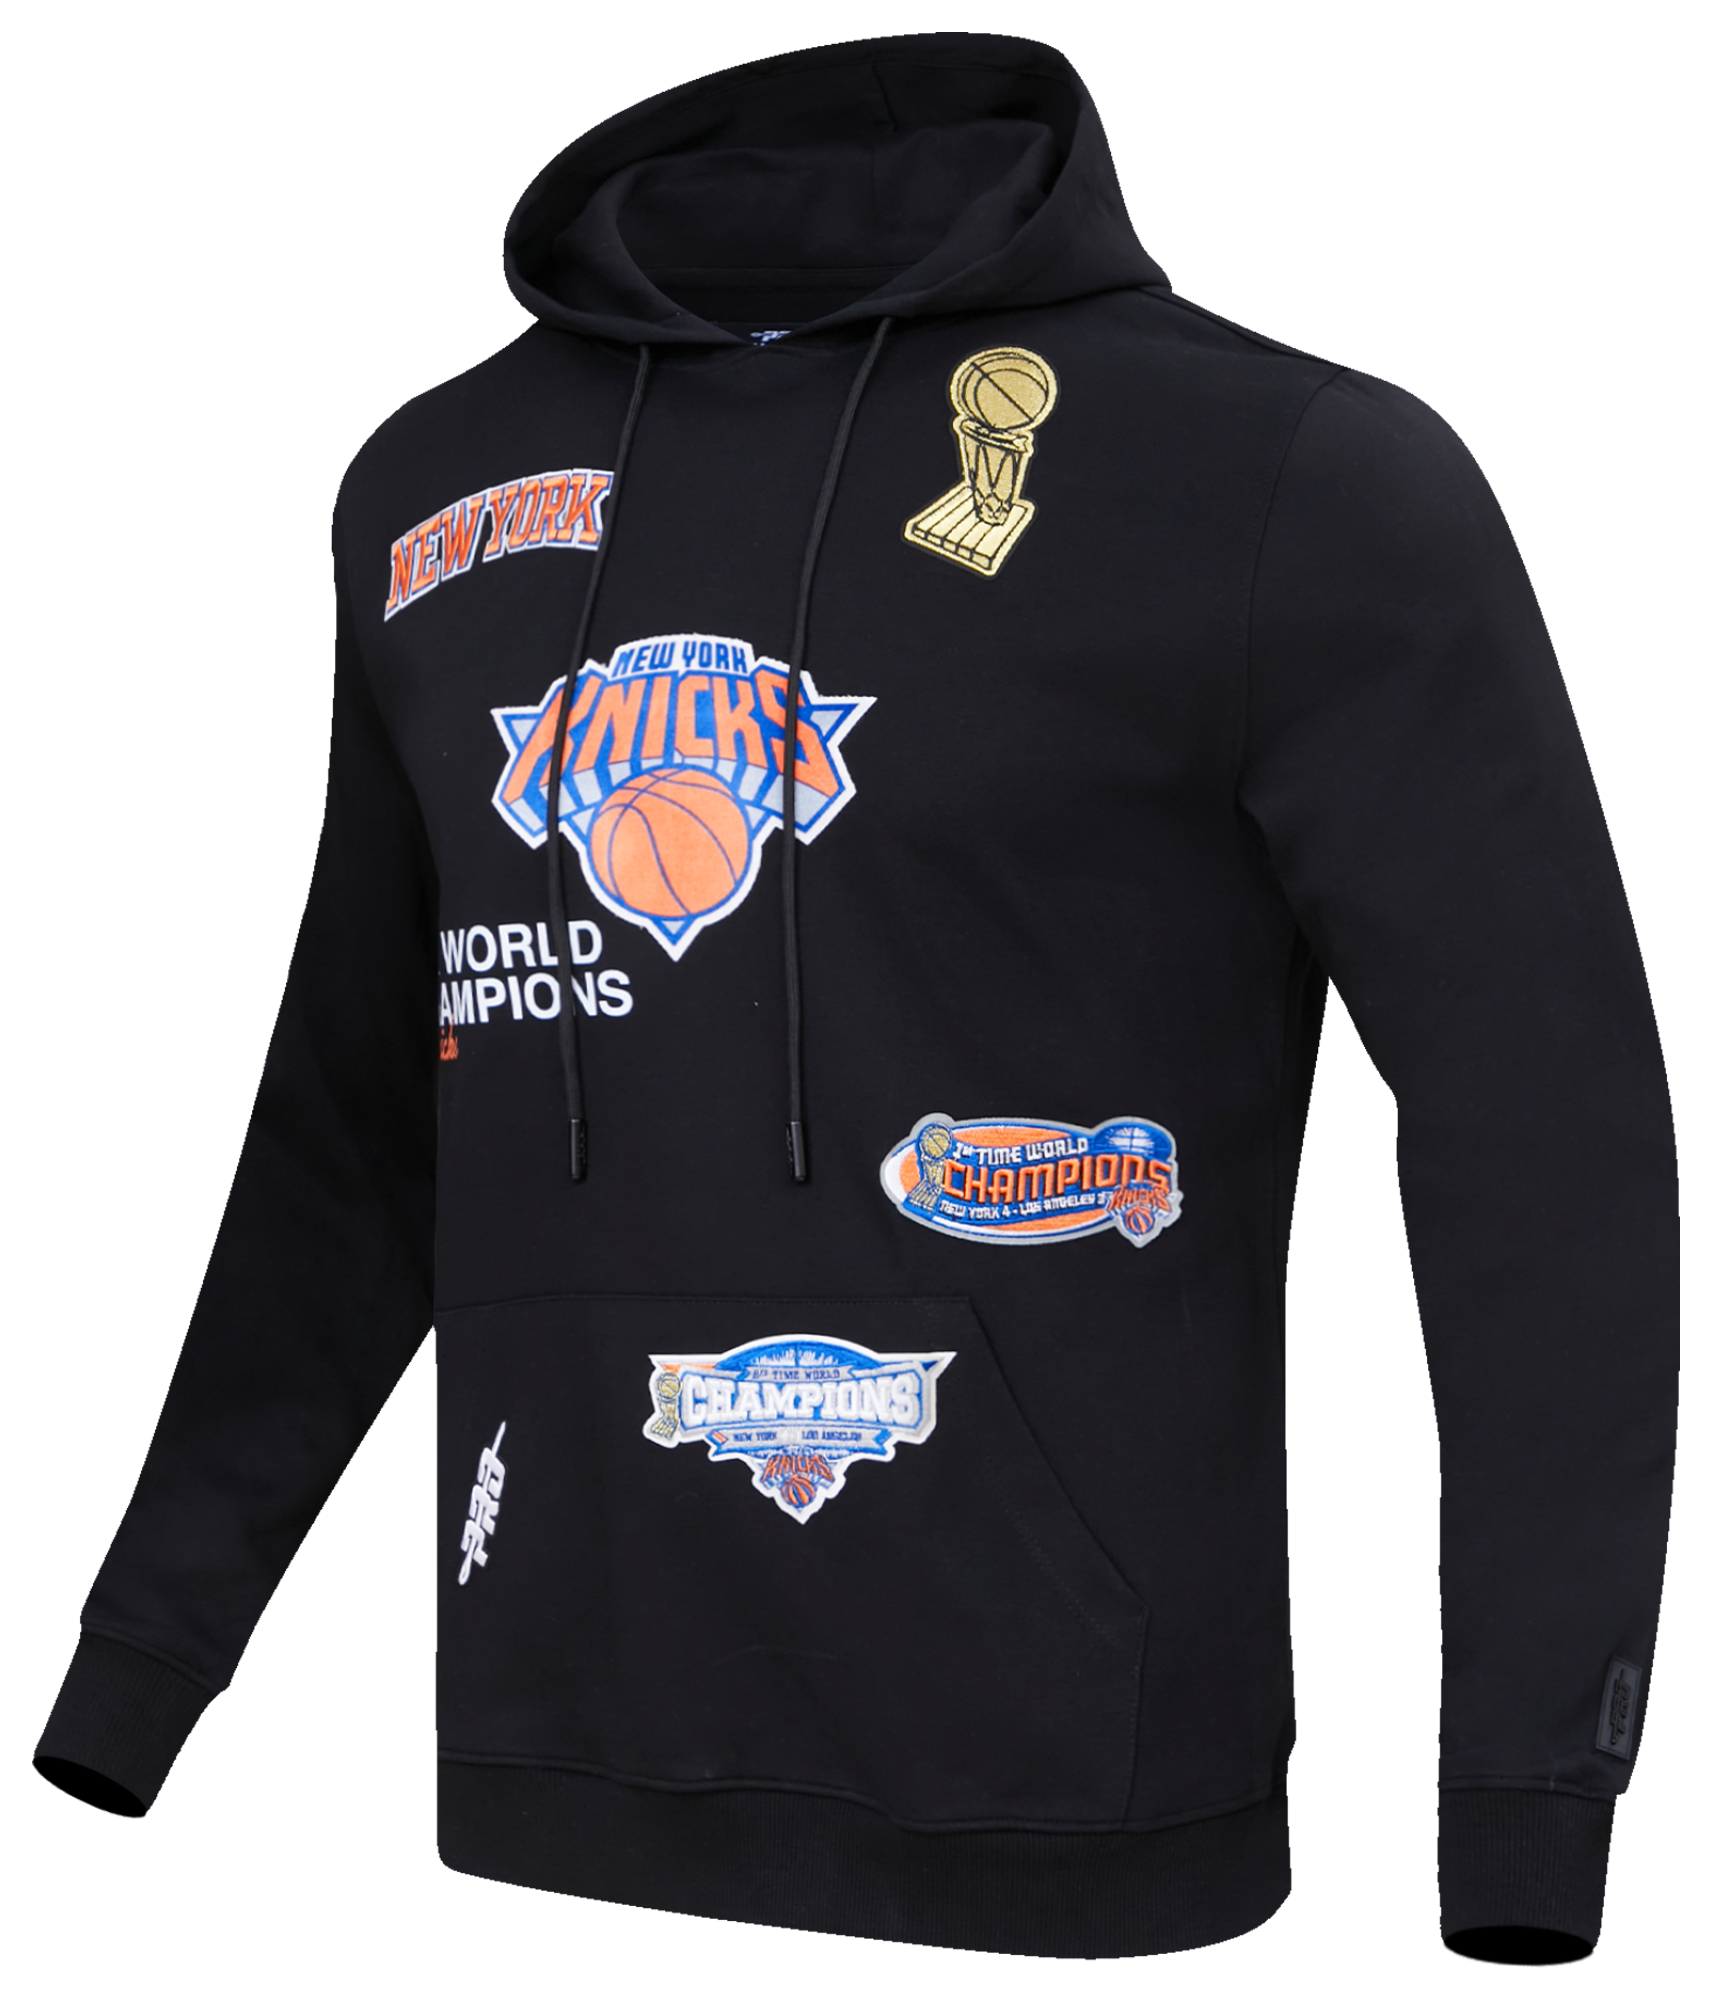 Champion Champion Knicks NBA Sweatshirt